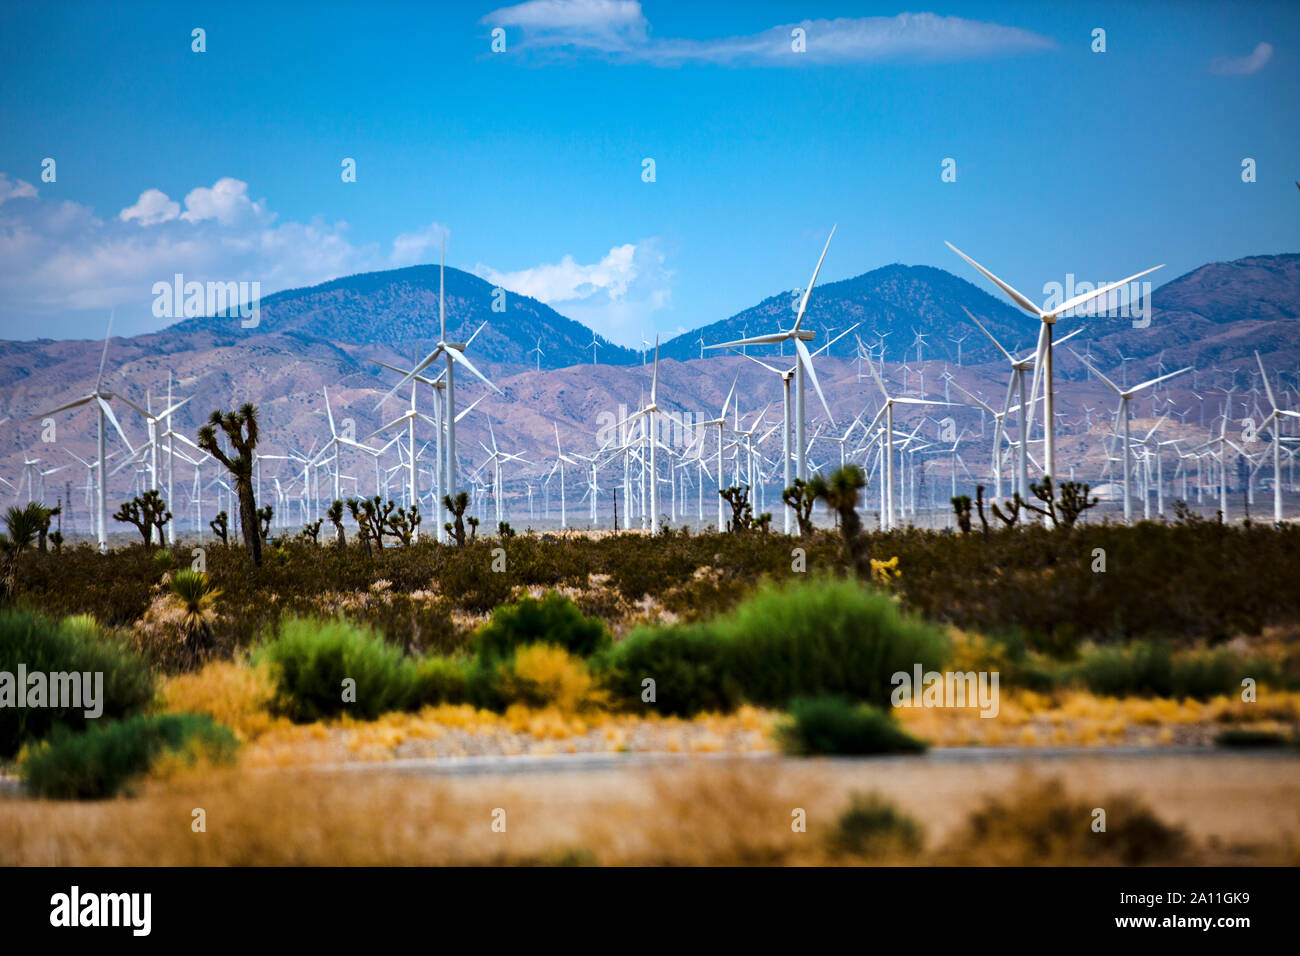 Windpark mit Windrädern in der Nähe von Barstow im kalifornischen entroterra. Ein ganzes Tal ist voll mit den Energiegewinnern. Foto Stock